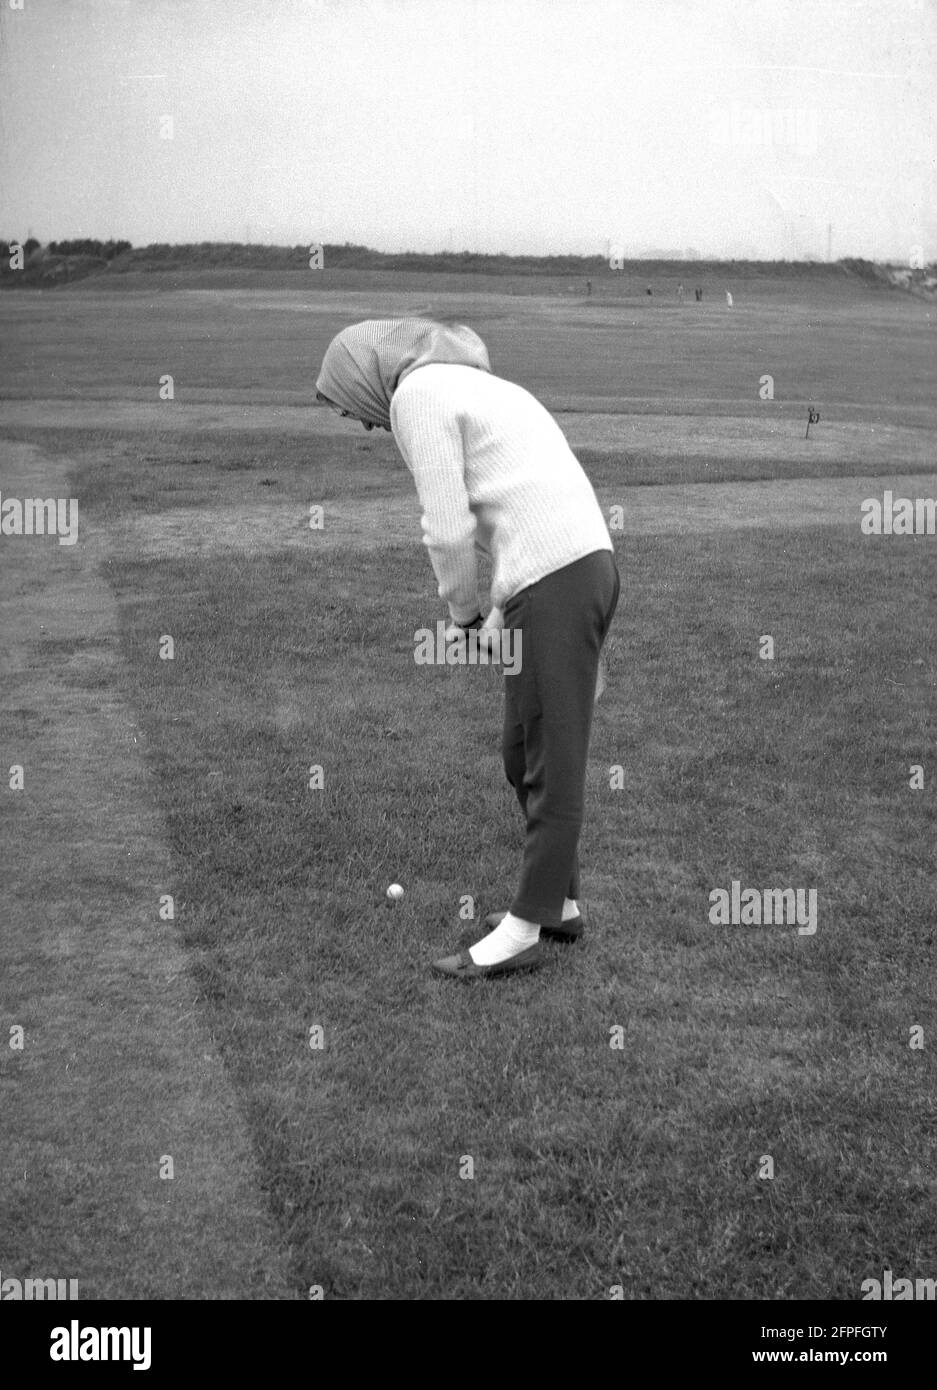 1962, historisch, eine Dame in einem Kopftuch, die Golf auf einem Putting Green am Meer oder einem Putting Course in Littlehampton, West Sussex, England, Großbritannien, spielt. Stockfoto